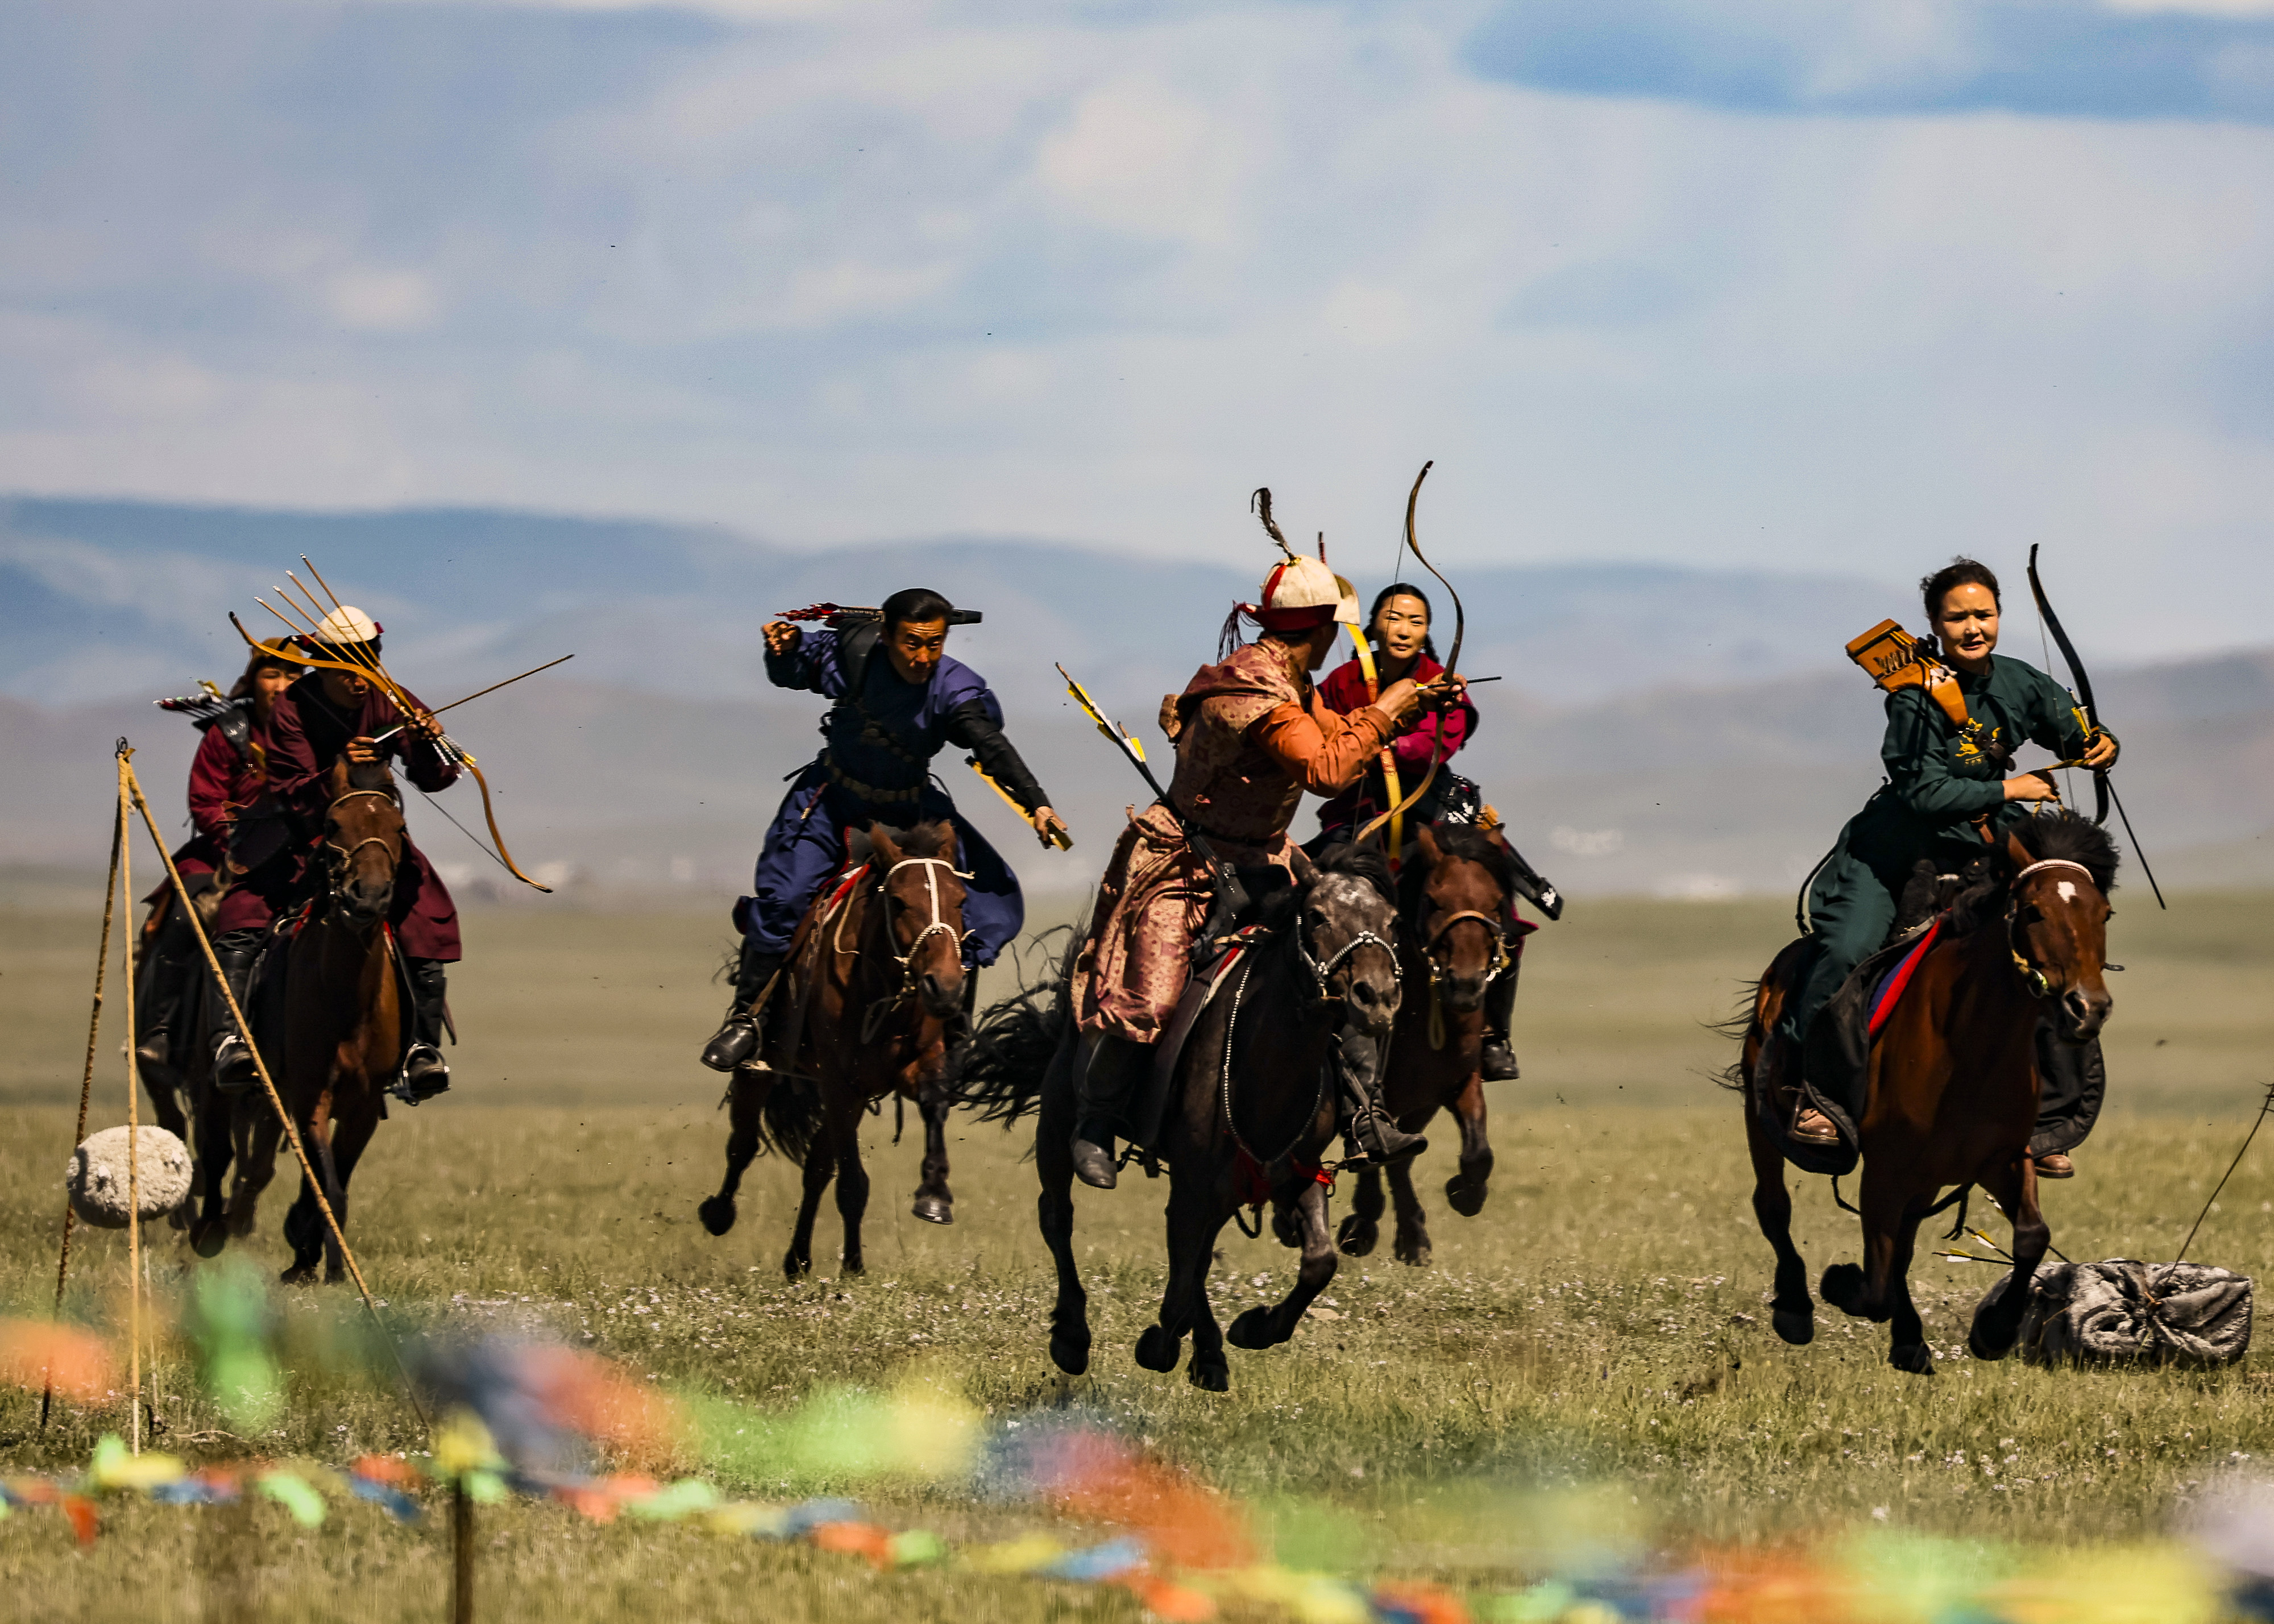 蒙古国:游牧民族世界文化节上的马术表演